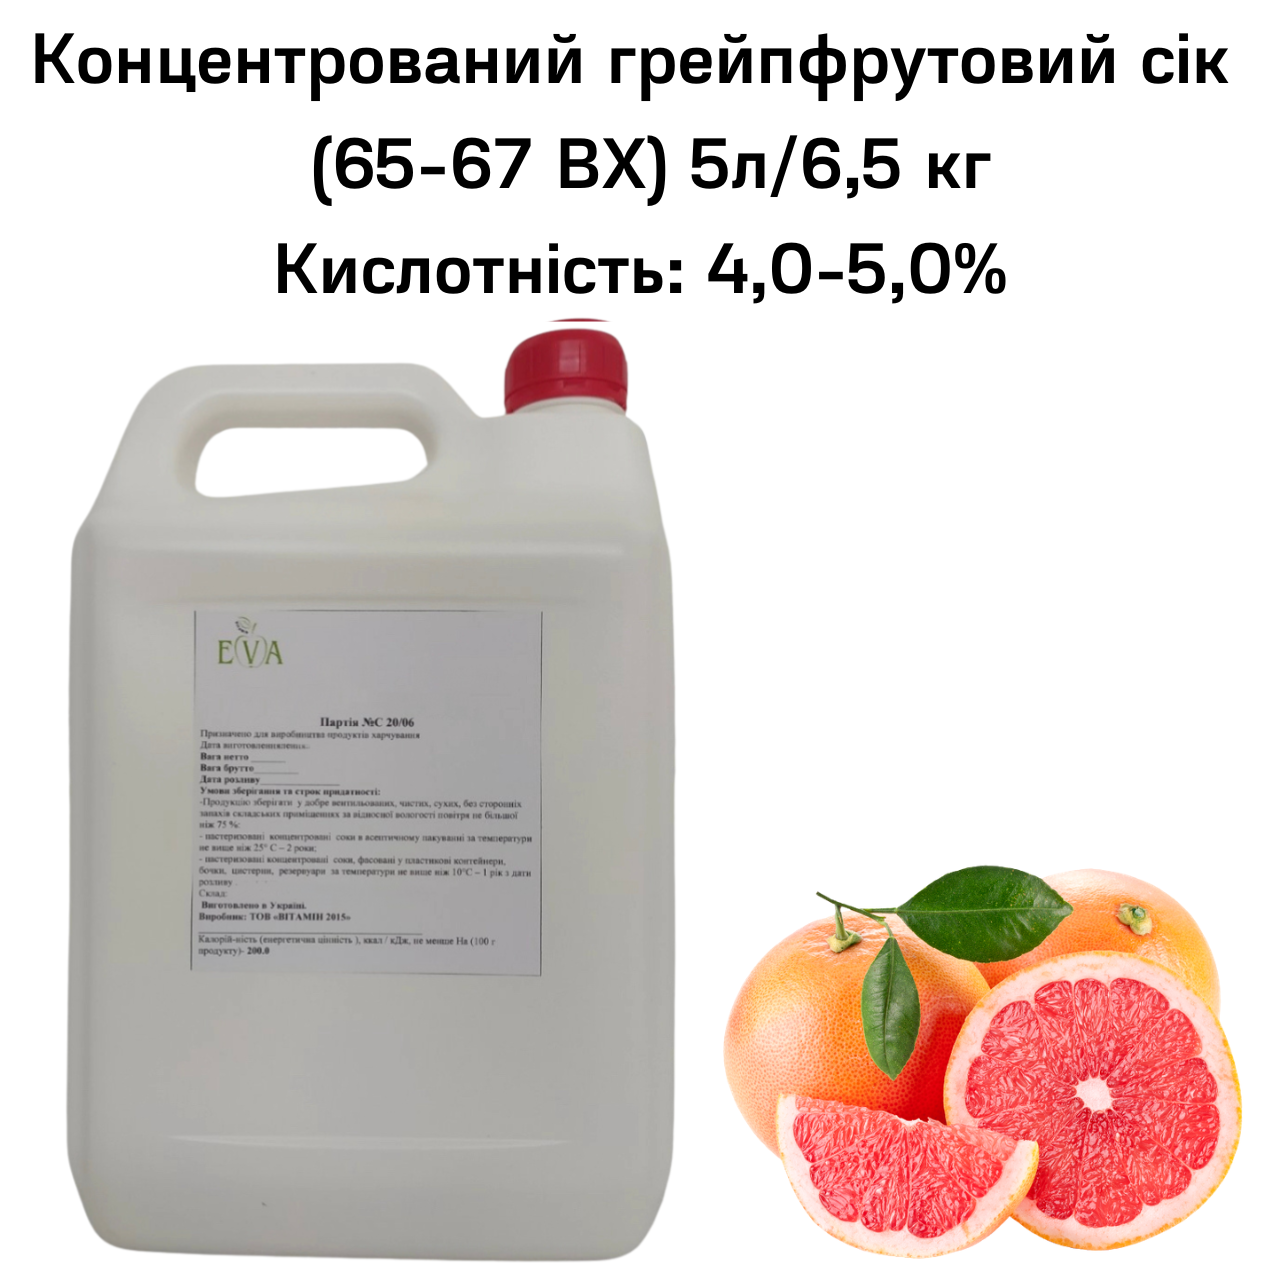 Концентрований грейпфрутовий сік (65-67 ВХ) каністра 5л/6,5 кг